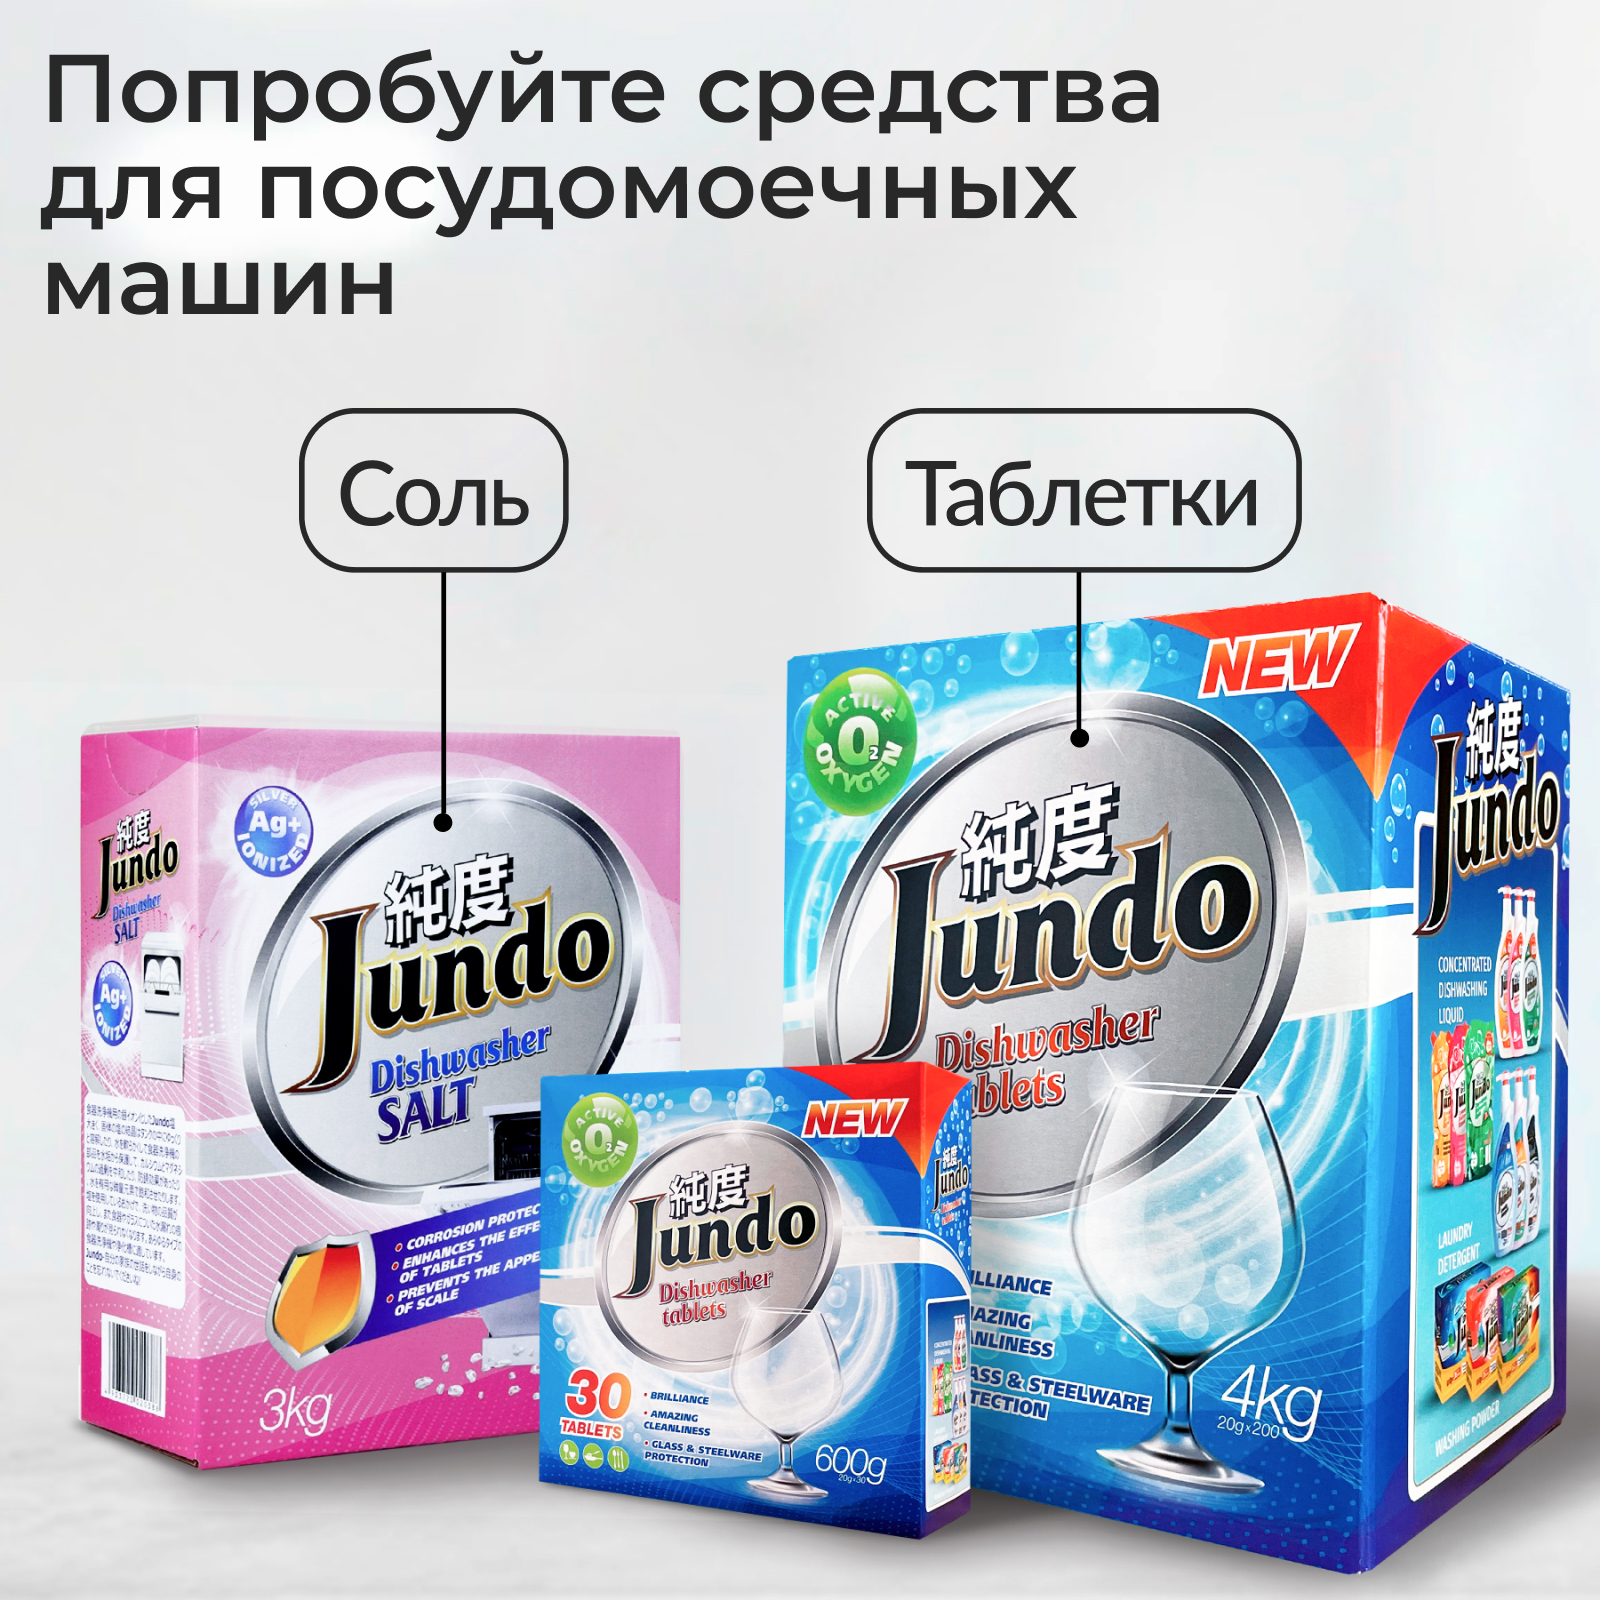  для посудомоечной машины Jundo мини с Витамином С и активным .